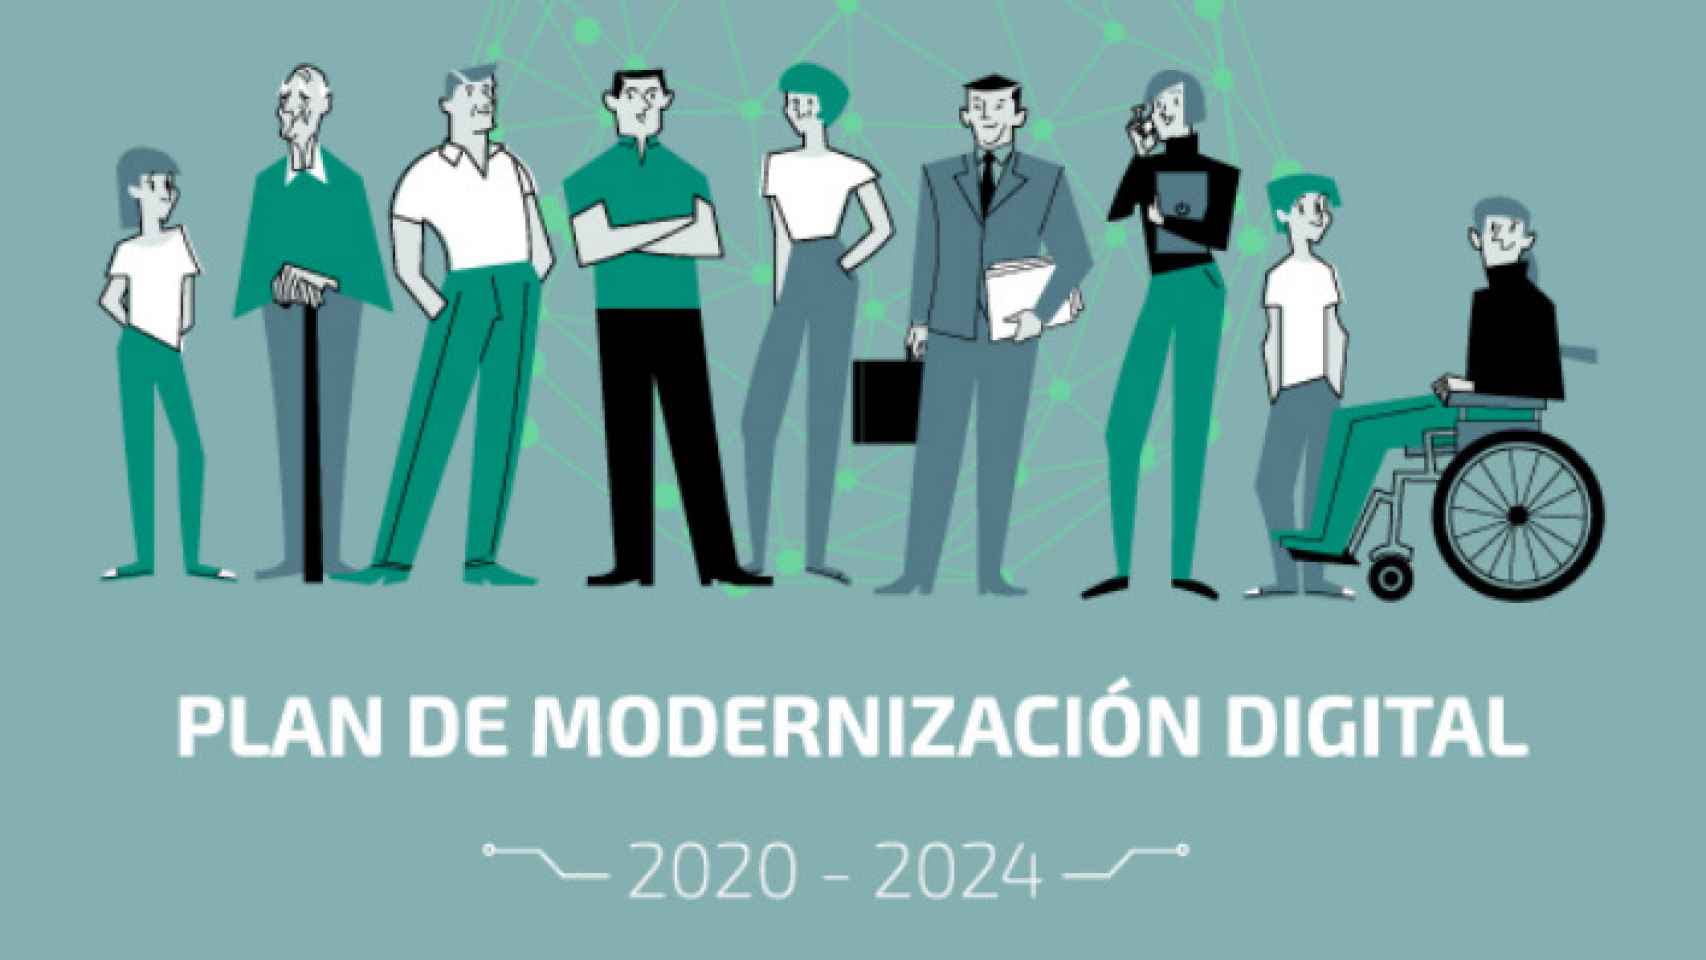 Imagen promocional del Plan de Modernización Ciudadana.